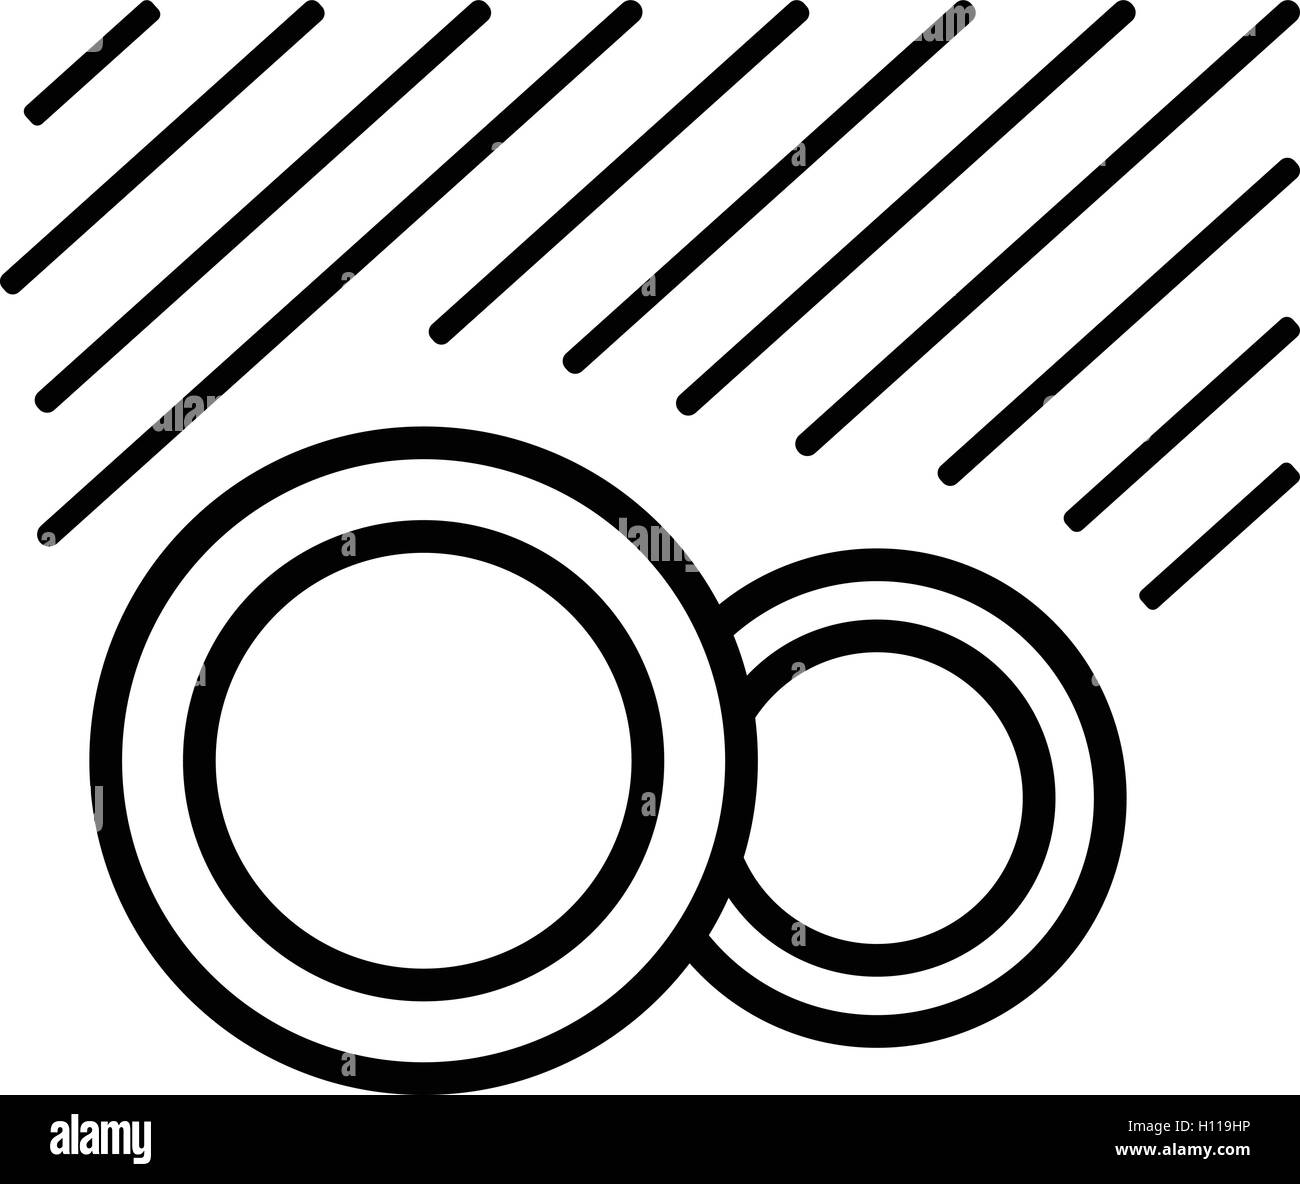 Symbole du lave-vaisselle au lave-vaisselle. isolé sign, vector  illustration Image Vectorielle Stock - Alamy